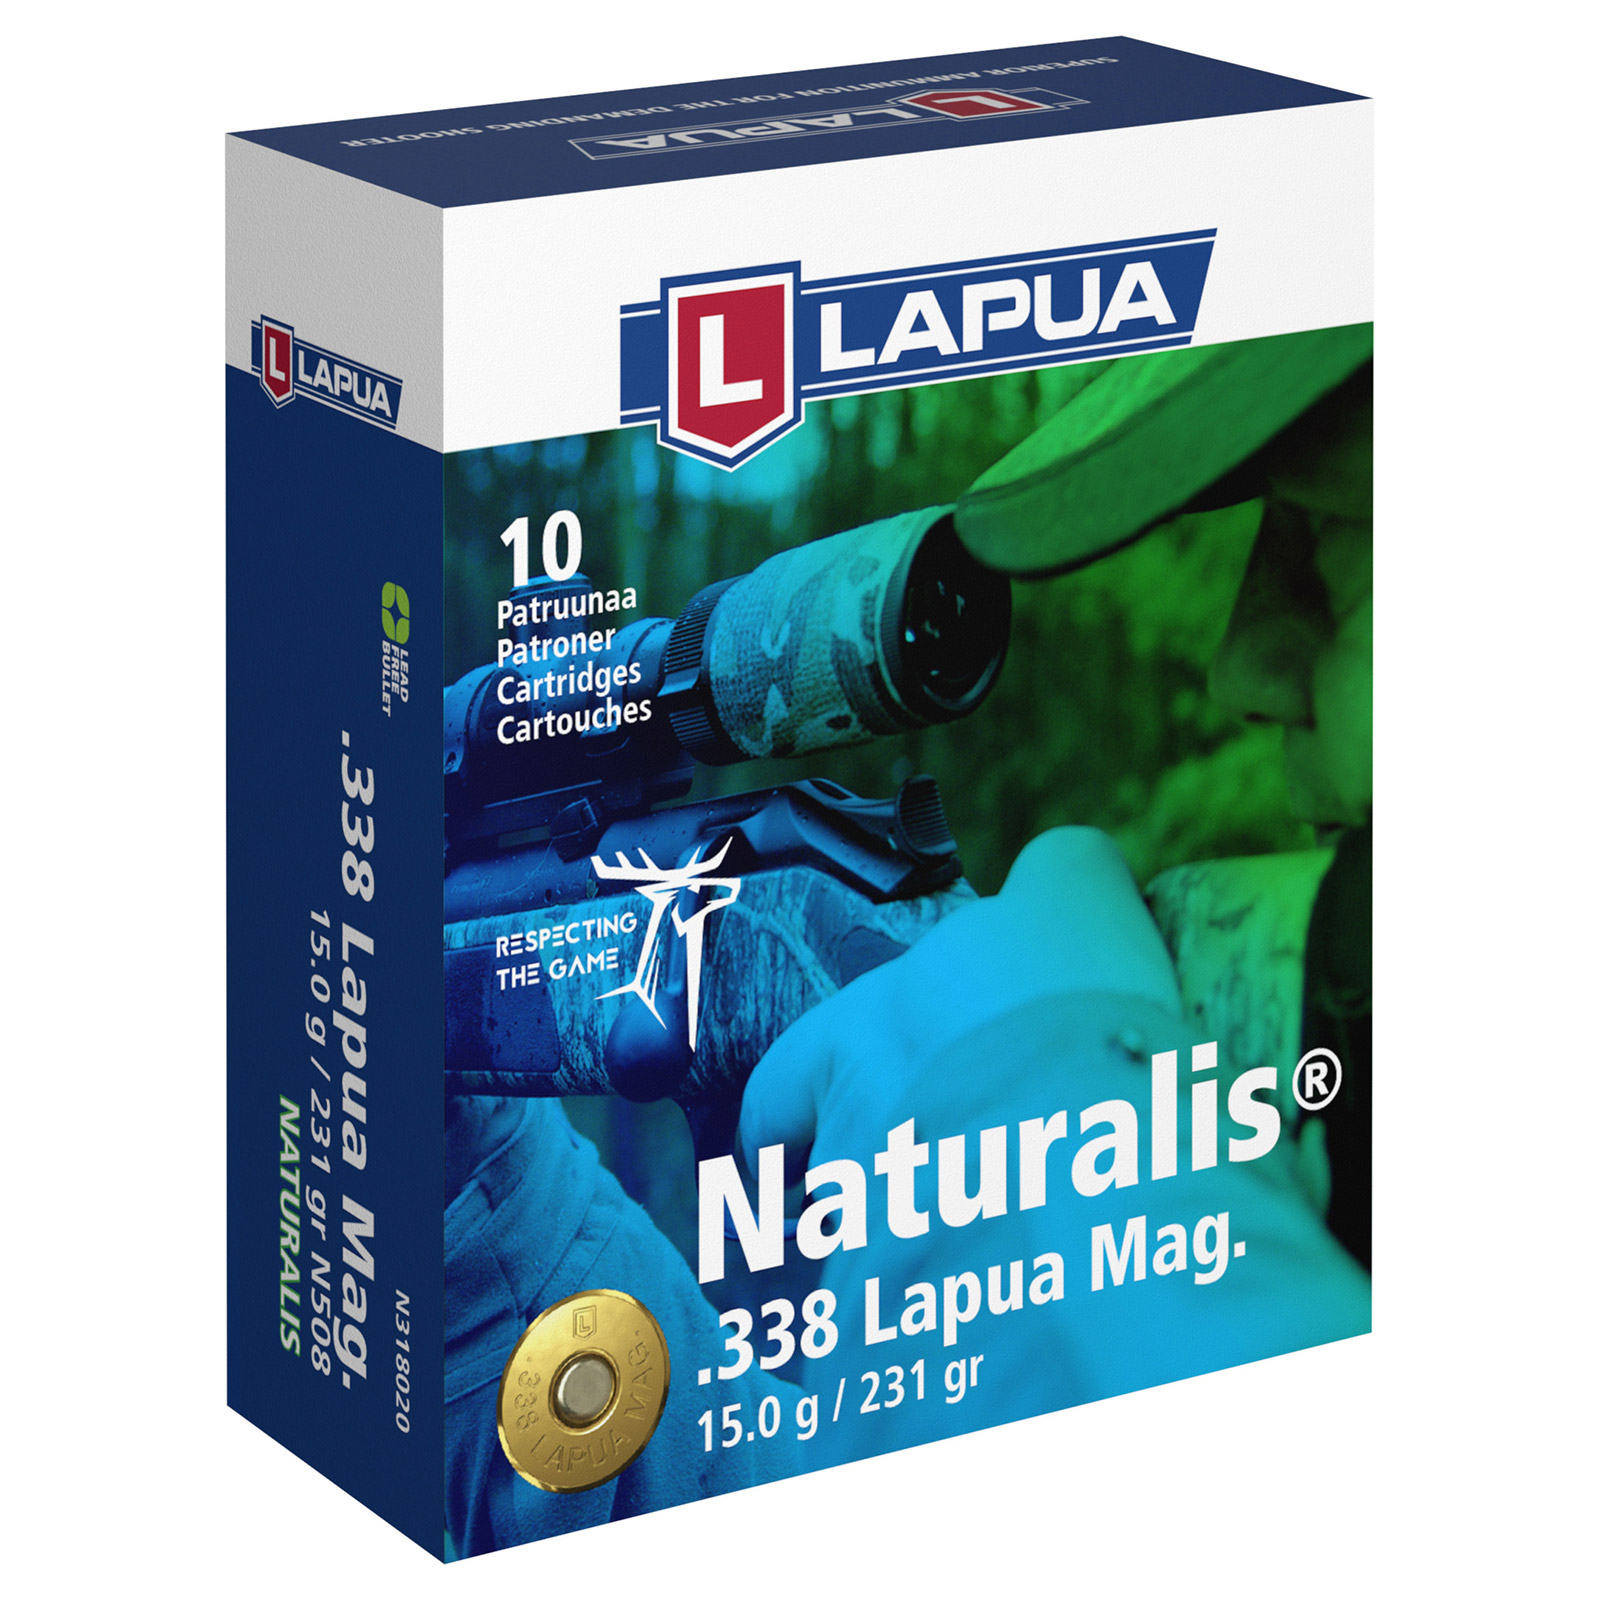 LAPUA .338 Lapua Mag Naturalis